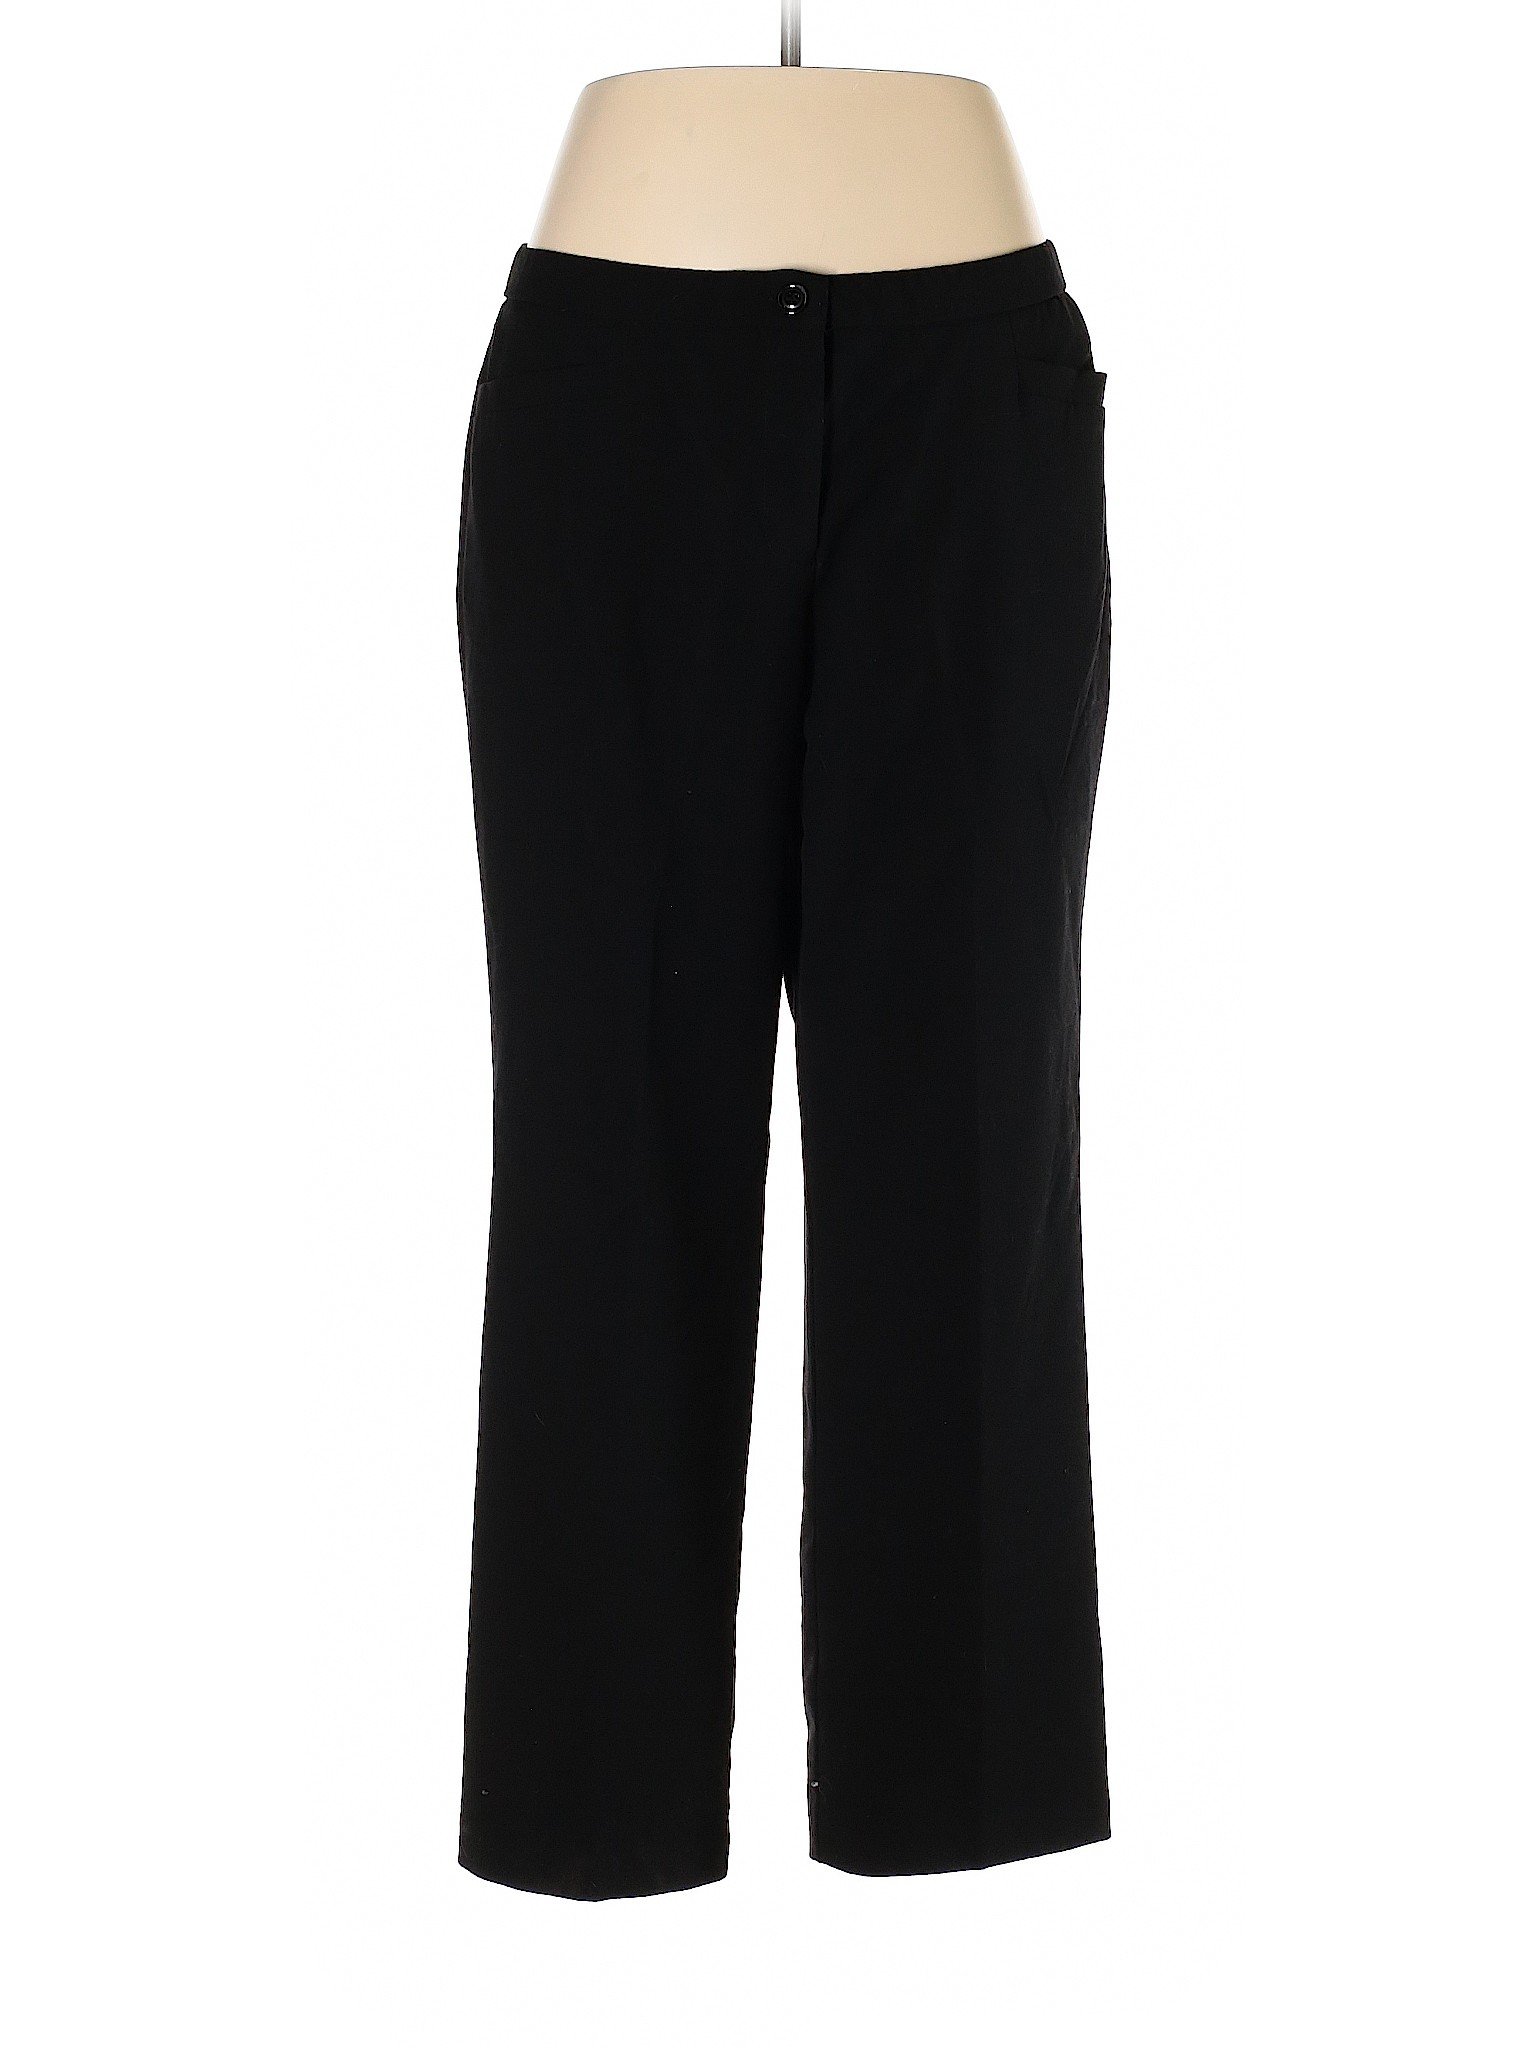 Roz & Ali Women Black Dress Pants 14 | eBay